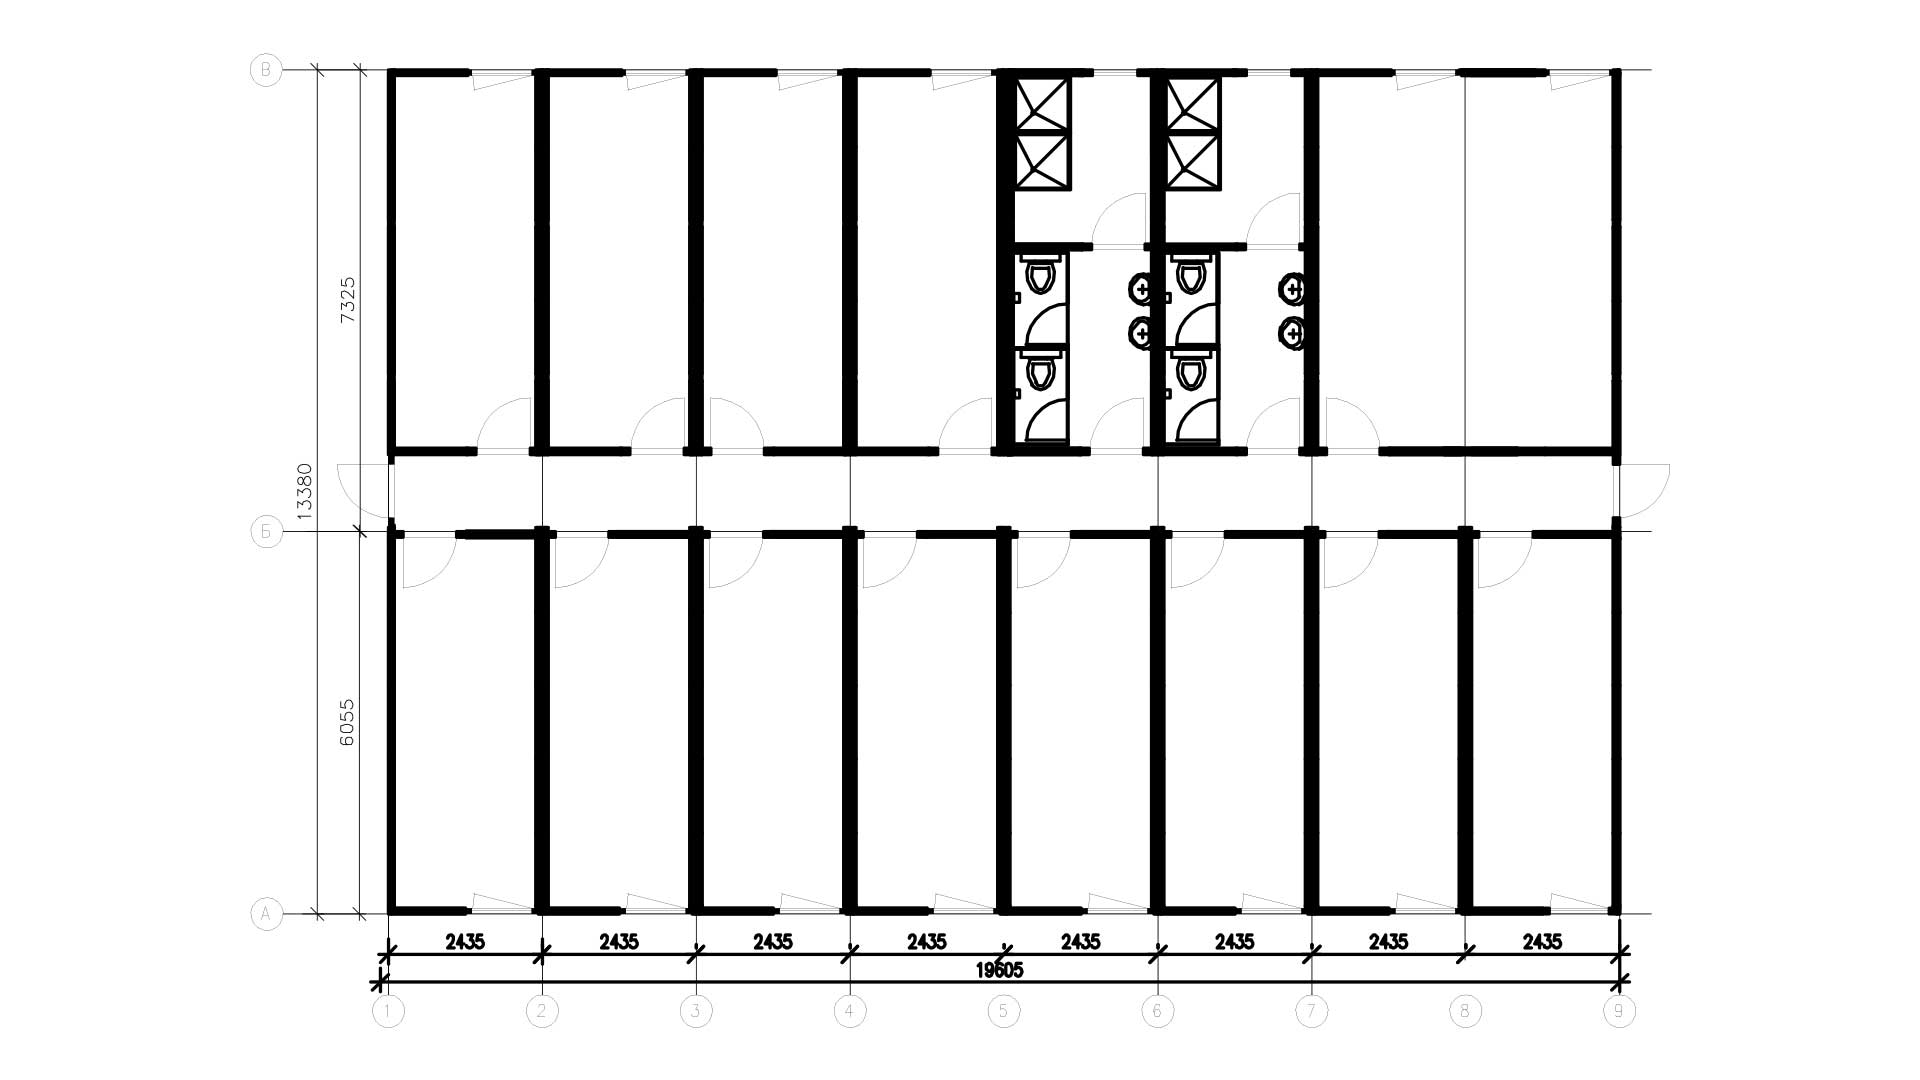 Планировка ФАП/Медпункт из 16 блок-контейнеров, площадь 260 кв.м.